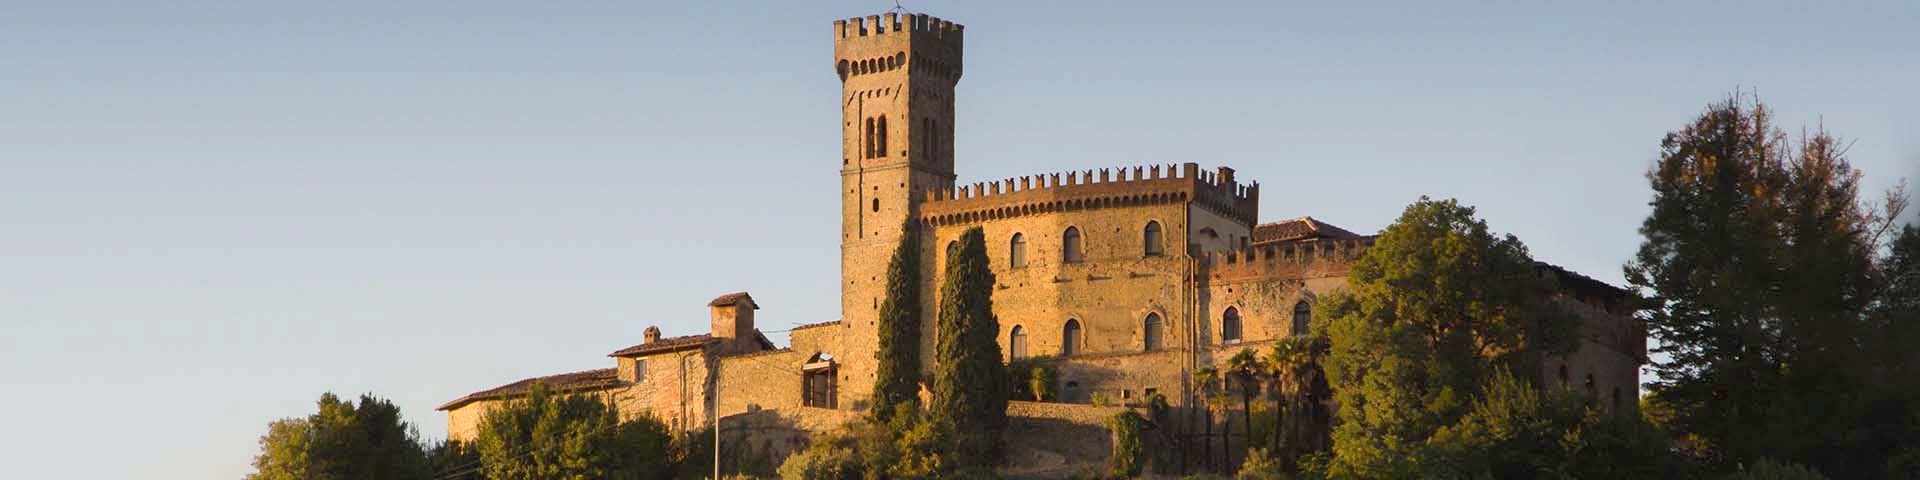 Cozzile Castle